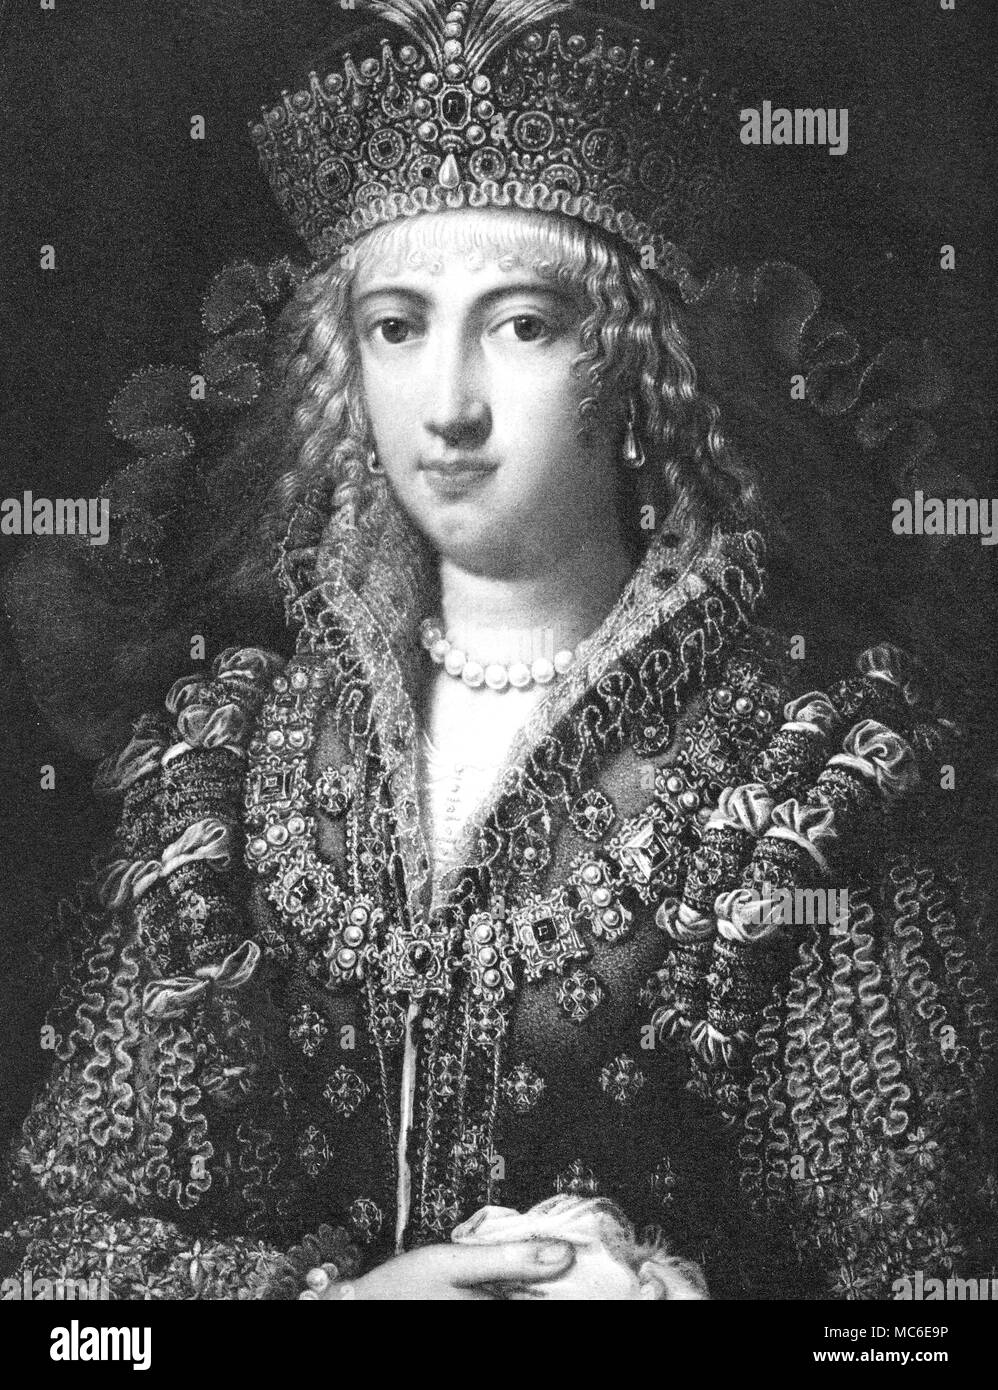 NOSTRADAMUS - CATHERINA dei Medici del siglo XIX Mezzotint grabado del retrato de Catalina de Médicis a la edad de veintiuno, de Poggio a Caiano. Catalina fue un ferviente admirador de Nostradamus, y le encargó a emitir los horóscopos de sus hijos - los futuros gobernantes de Francia. Durante su progreso a través de Francia, pidió a Nostradamus en Salon de Provence. Expuso el triste destino de Catherine y de su progenie, en su colección de profecías. Foto de stock